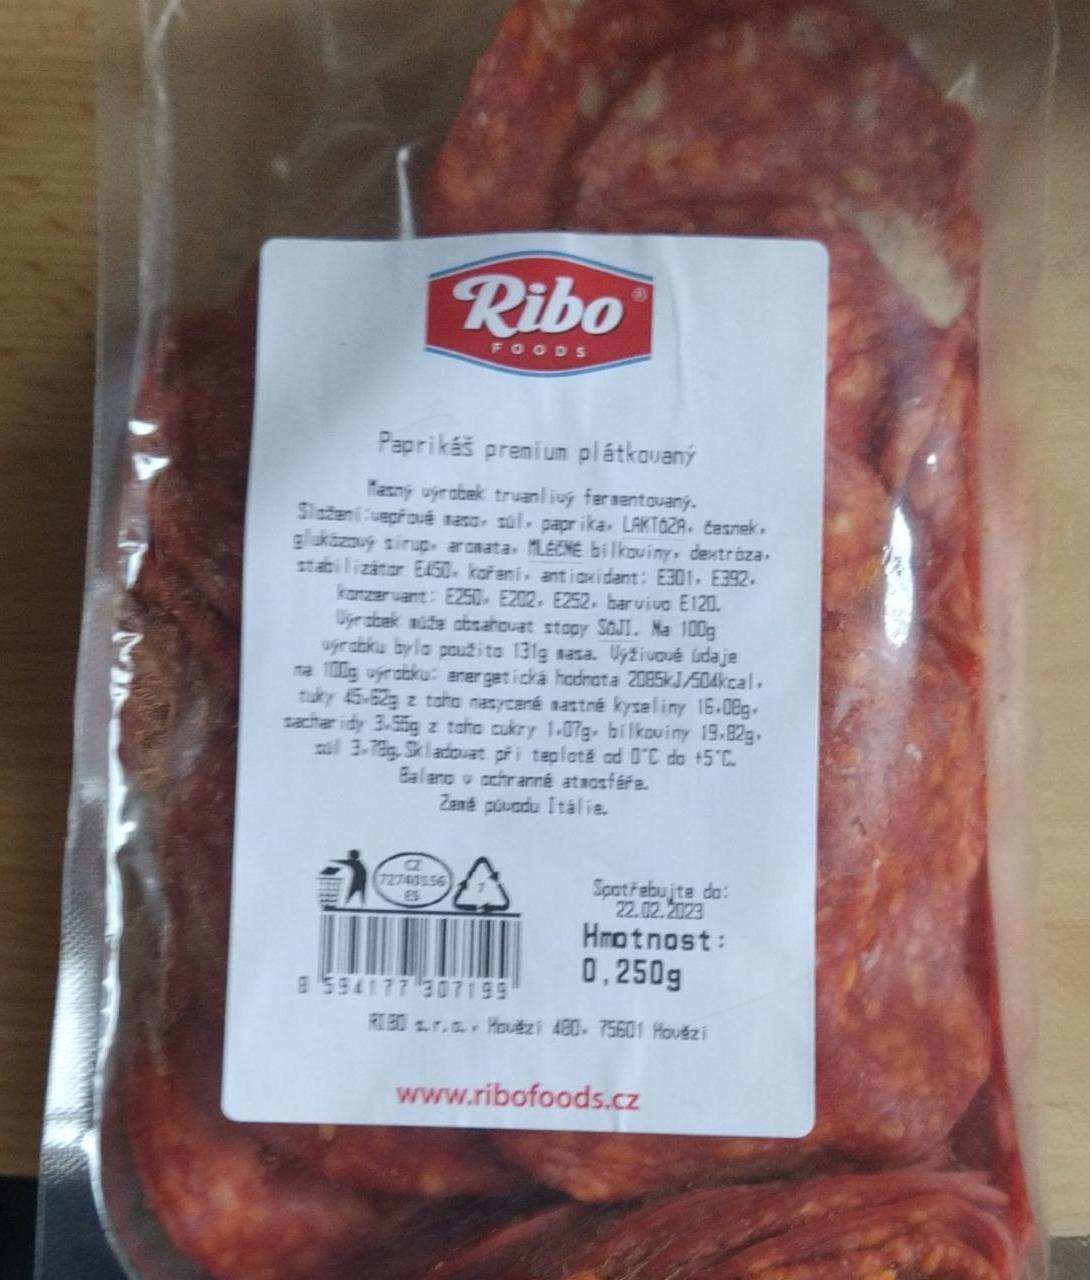 Fotografie - Paprikáš premium plátkový Ribo foods